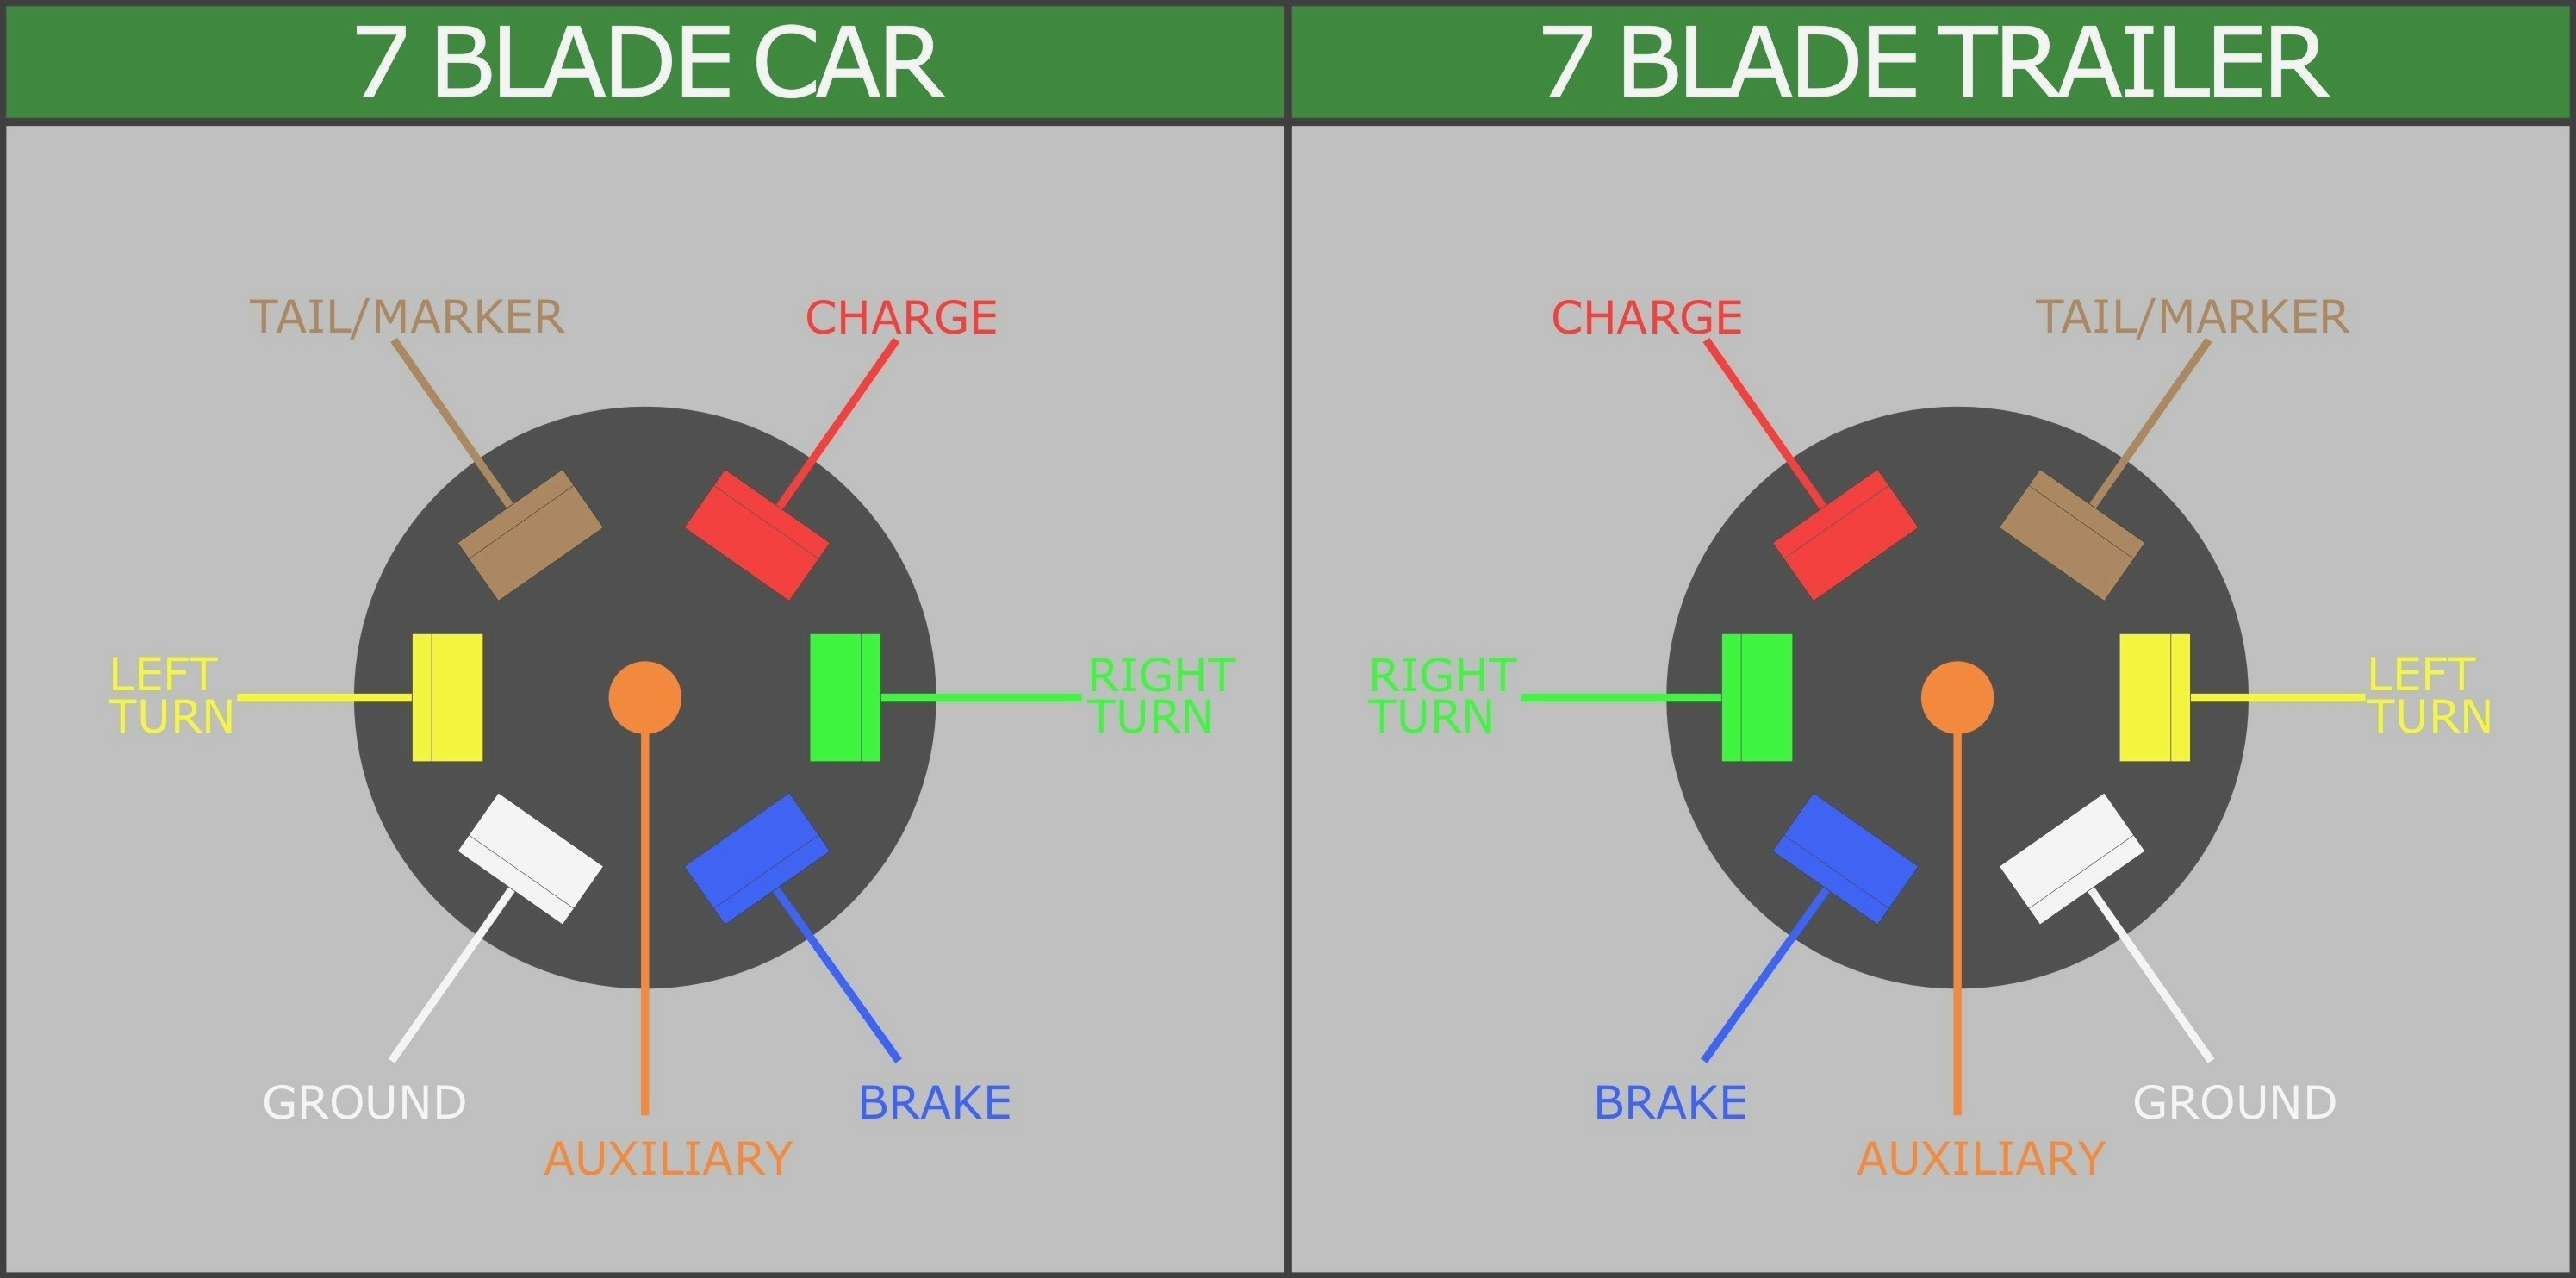 7 Pin Wiring Diagram Ford | Wiring Diagram - 7 Blade Trailer Wiring Diagram